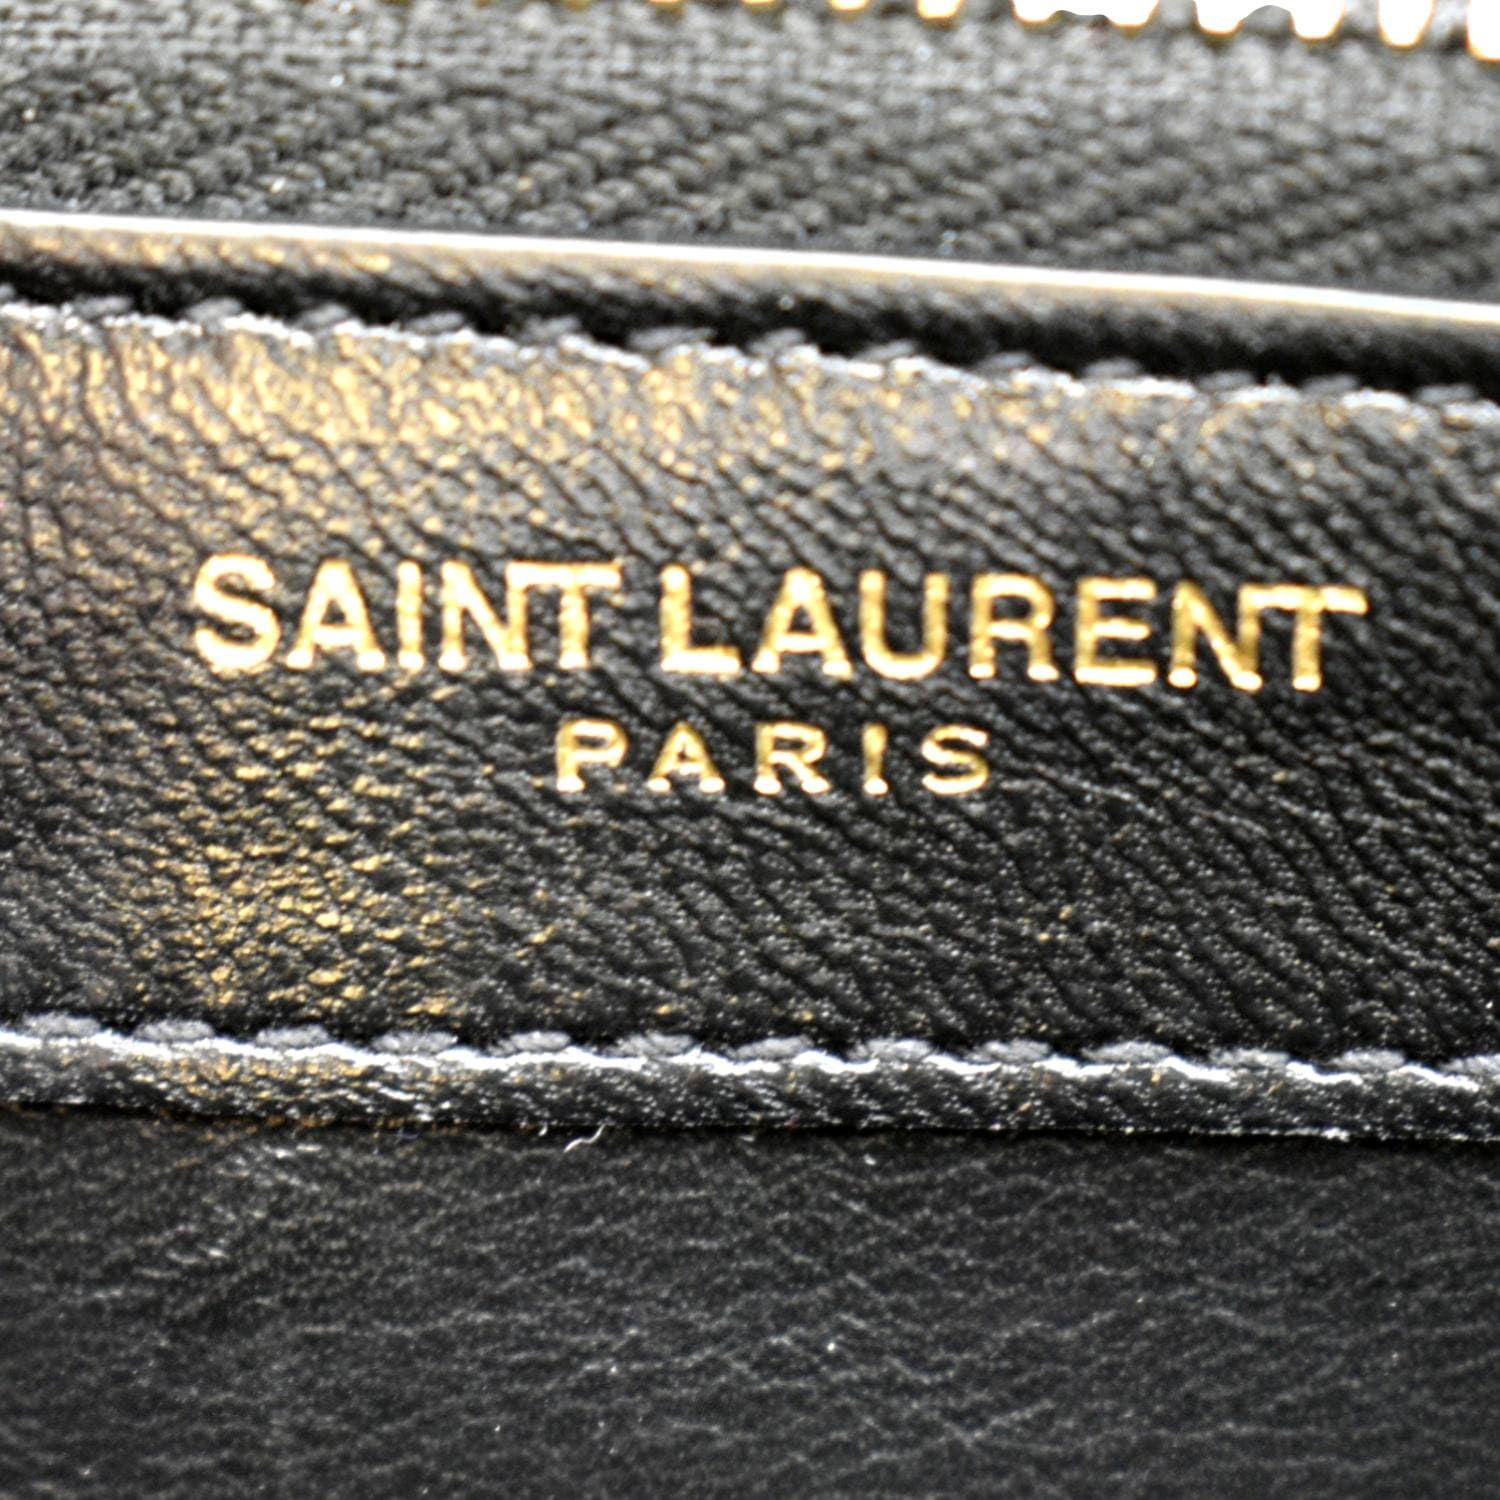 Authentic Saint Laurent Bag